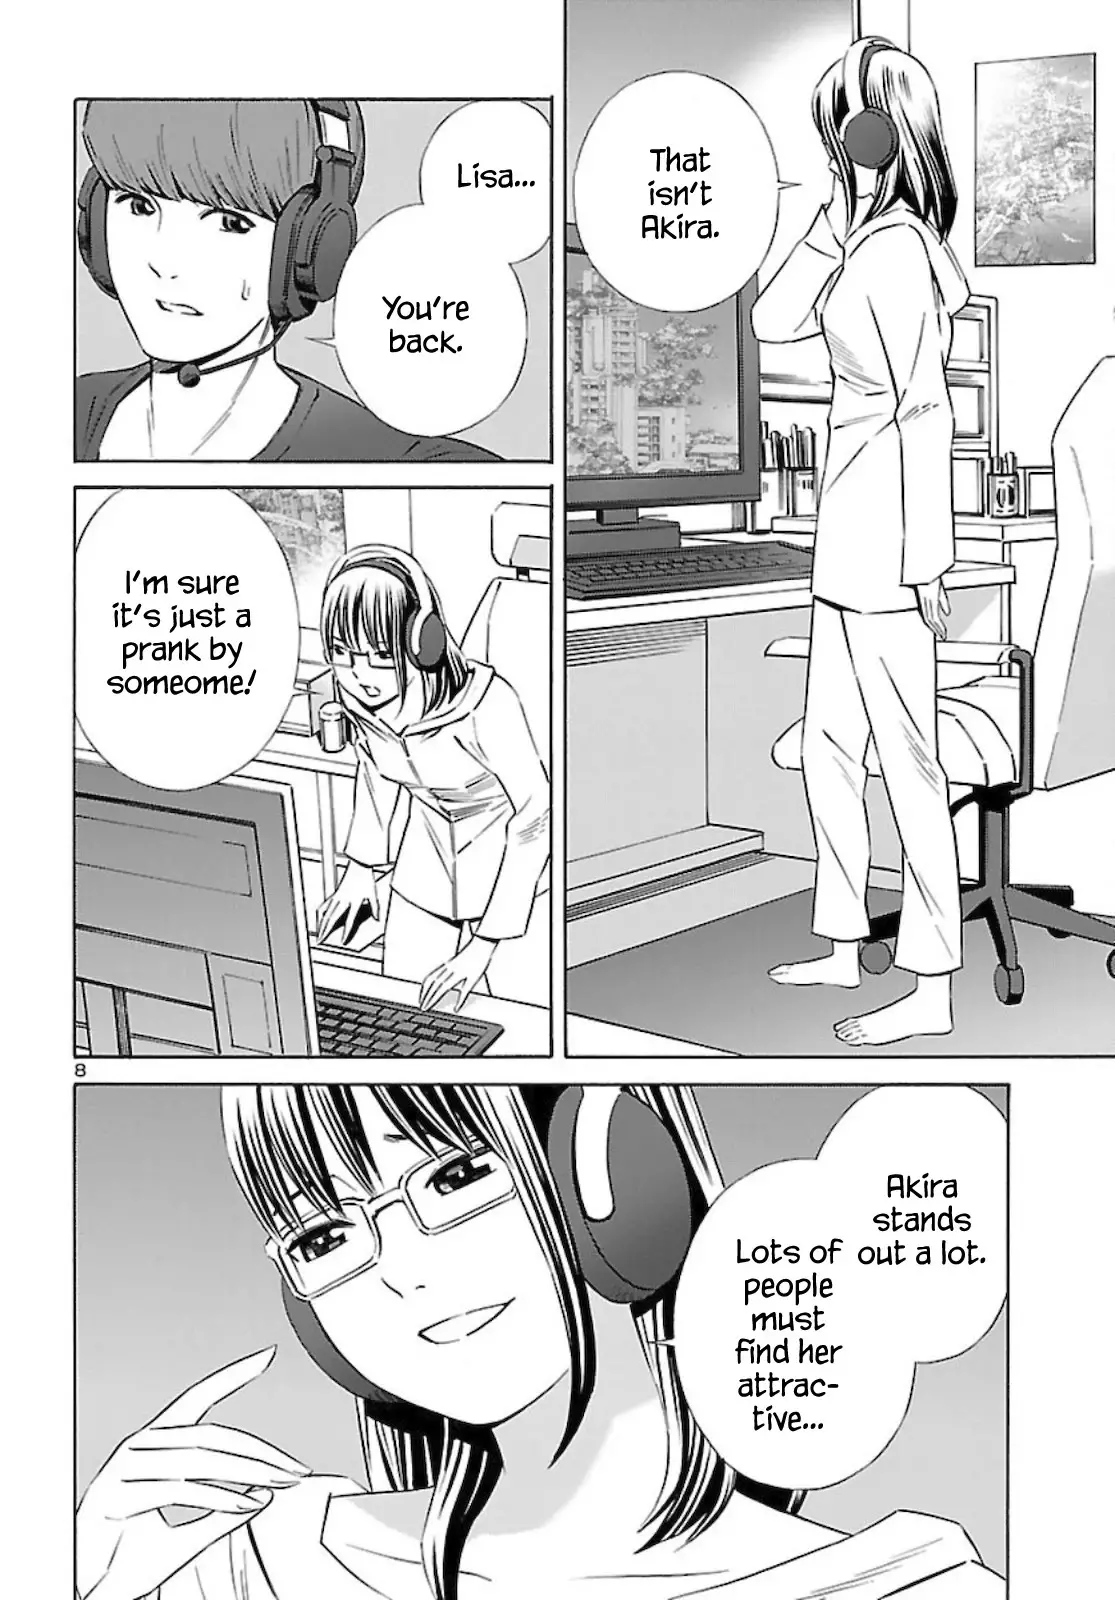 24-Ku No Hanako-San - 13 page 8-24fb01d4